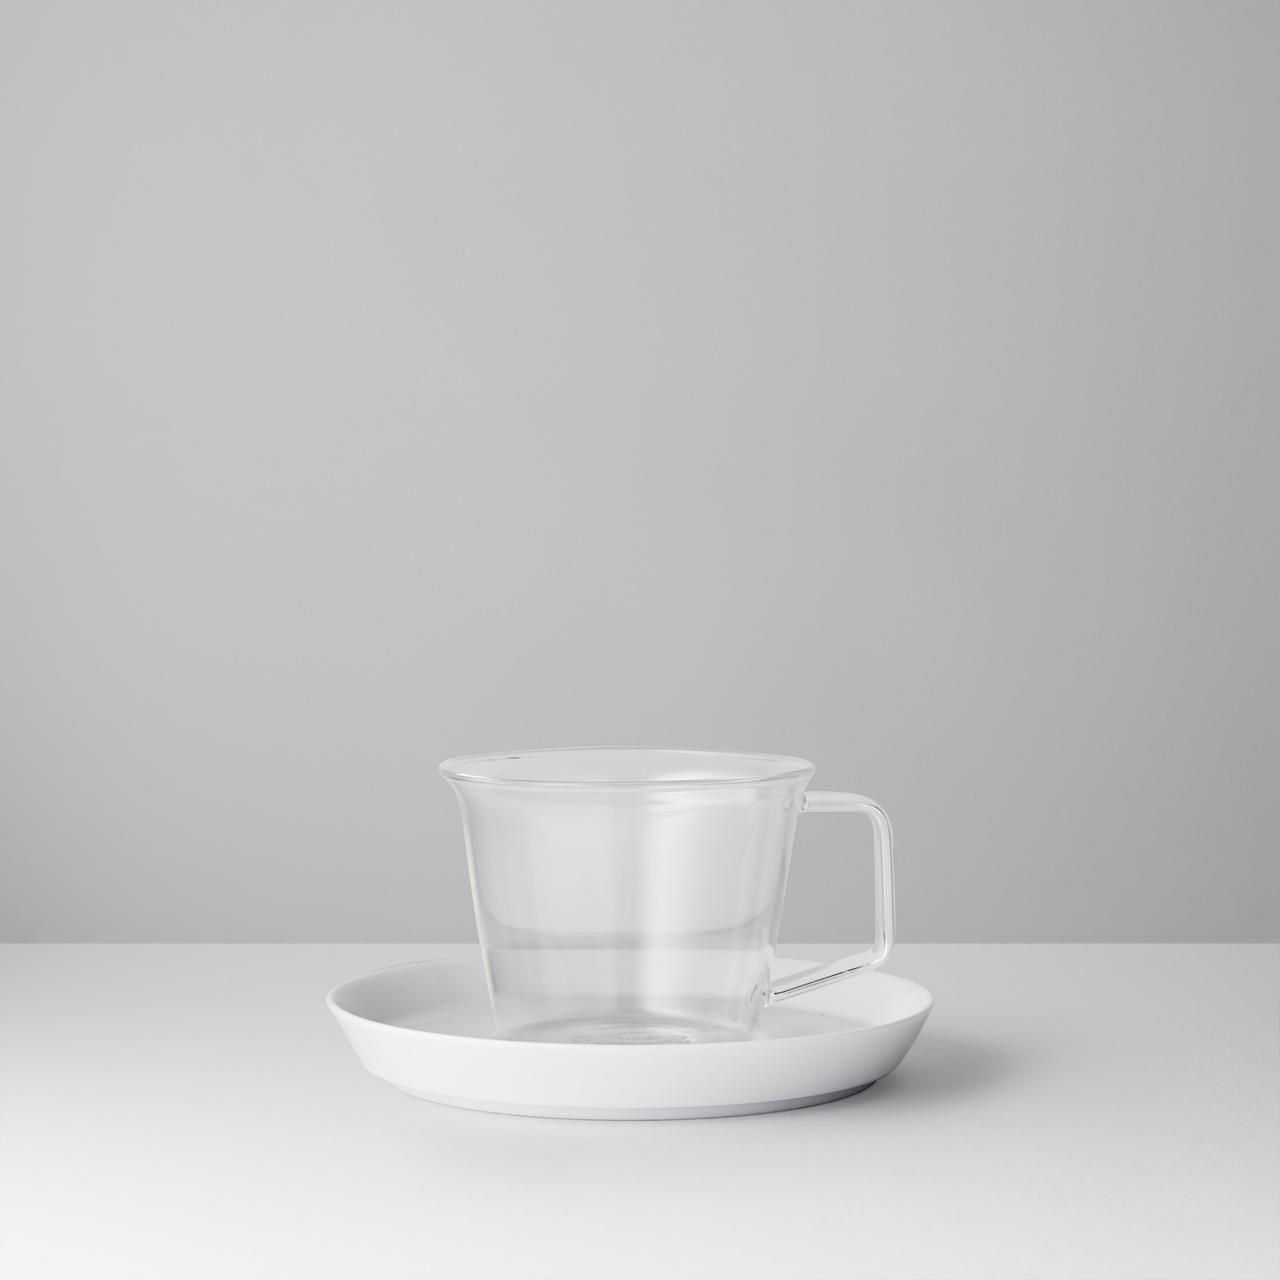 Kinto cup and saucer